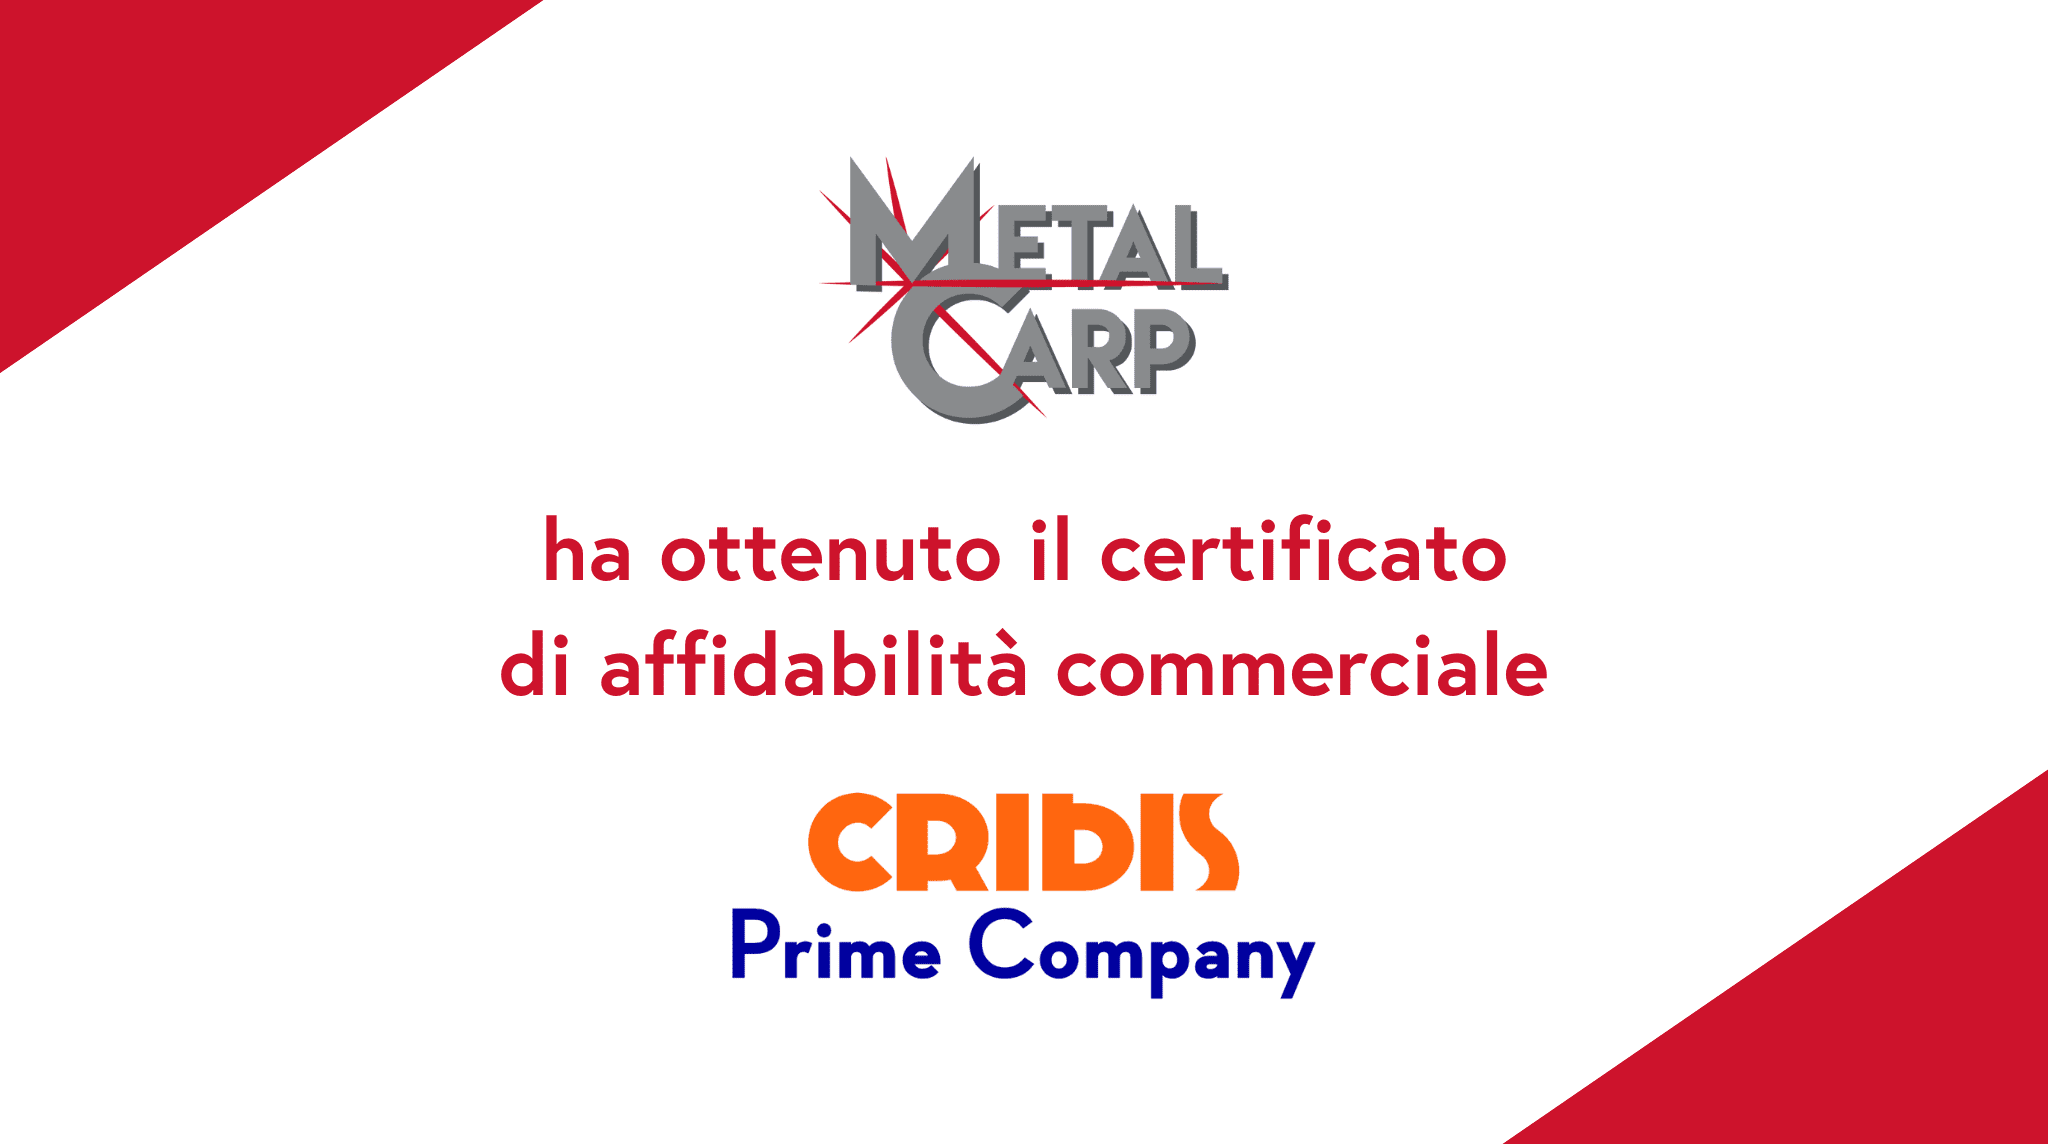 Oggi è una giornata di celebrazione per Metal Carp! Con grande orgoglio vi annunciamo che abbiamo ottenuto il certificato di affidabilità commerciale da Cribis!